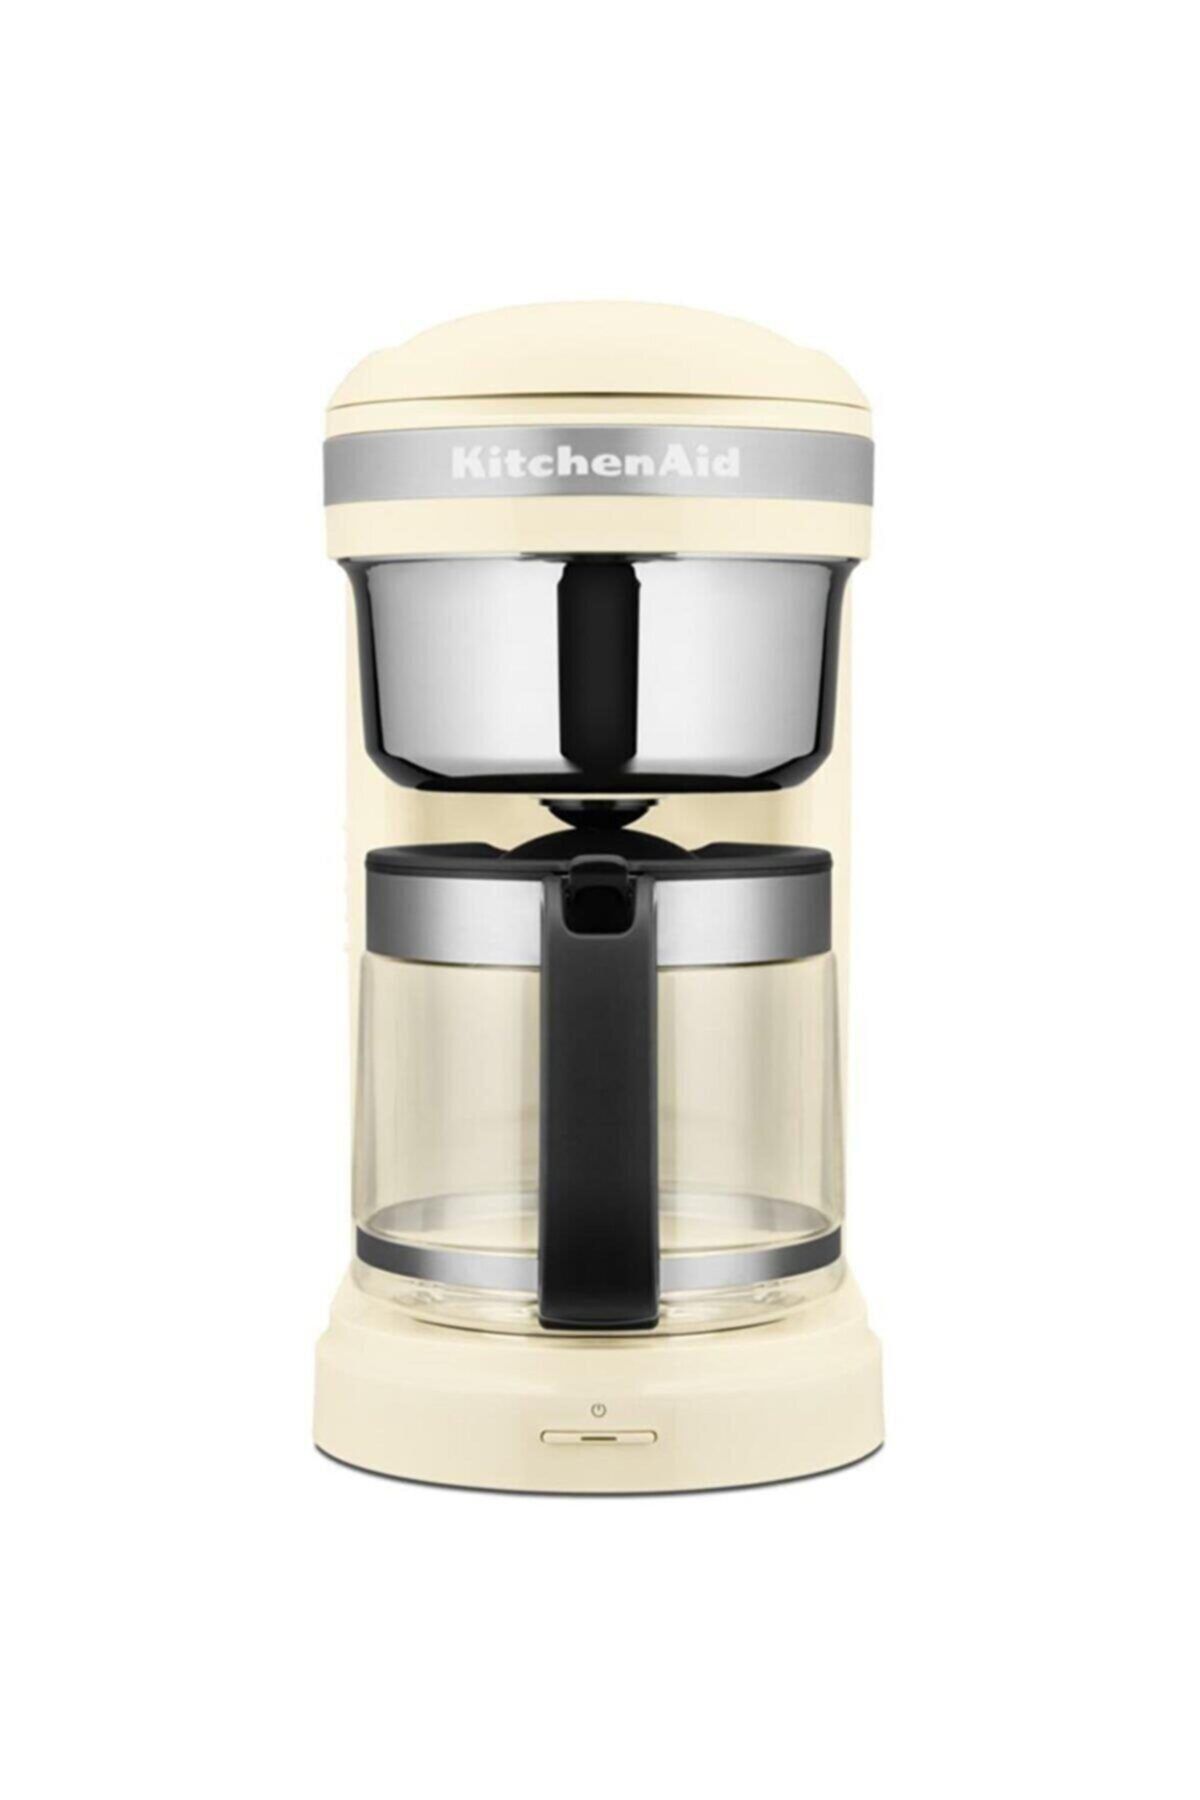 Kitchenaid Filtre Kahve Makinesi 5kcm1209 Almond Cream-eac